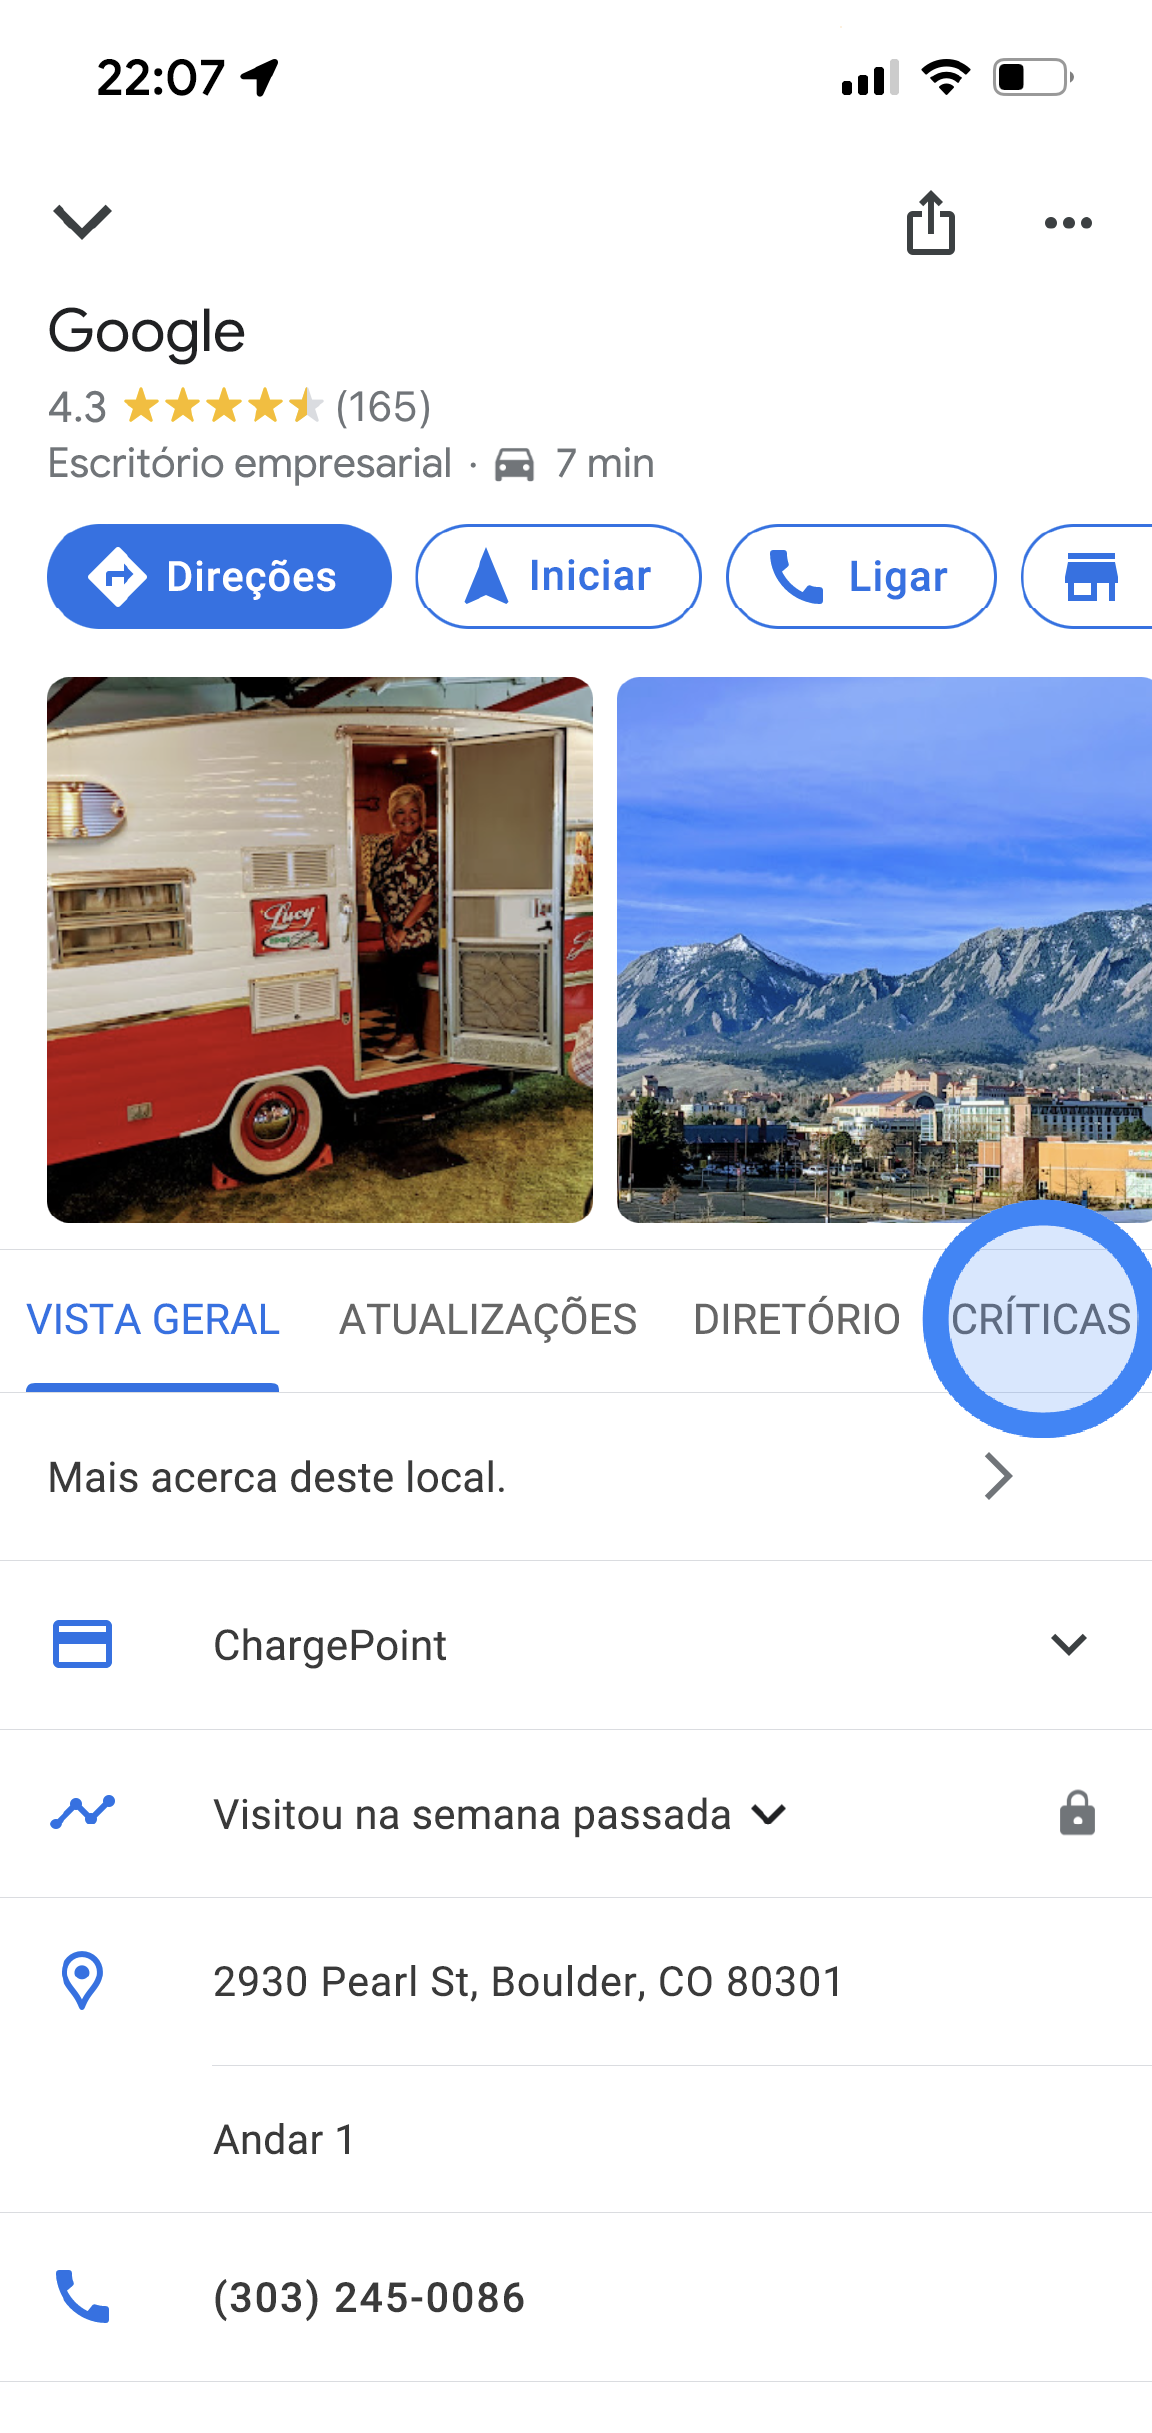 Na app Google Maps, são apresentadas informações sobre a localização de um escritório da Google. As informações incluem a classificação média das críticas, fotos, o endereço e o número de telefone. No centro do ecrã, estão disponíveis separadores onde pode tocar. Estes têm as etiquetas Vista geral, Atualizações e Críticas.